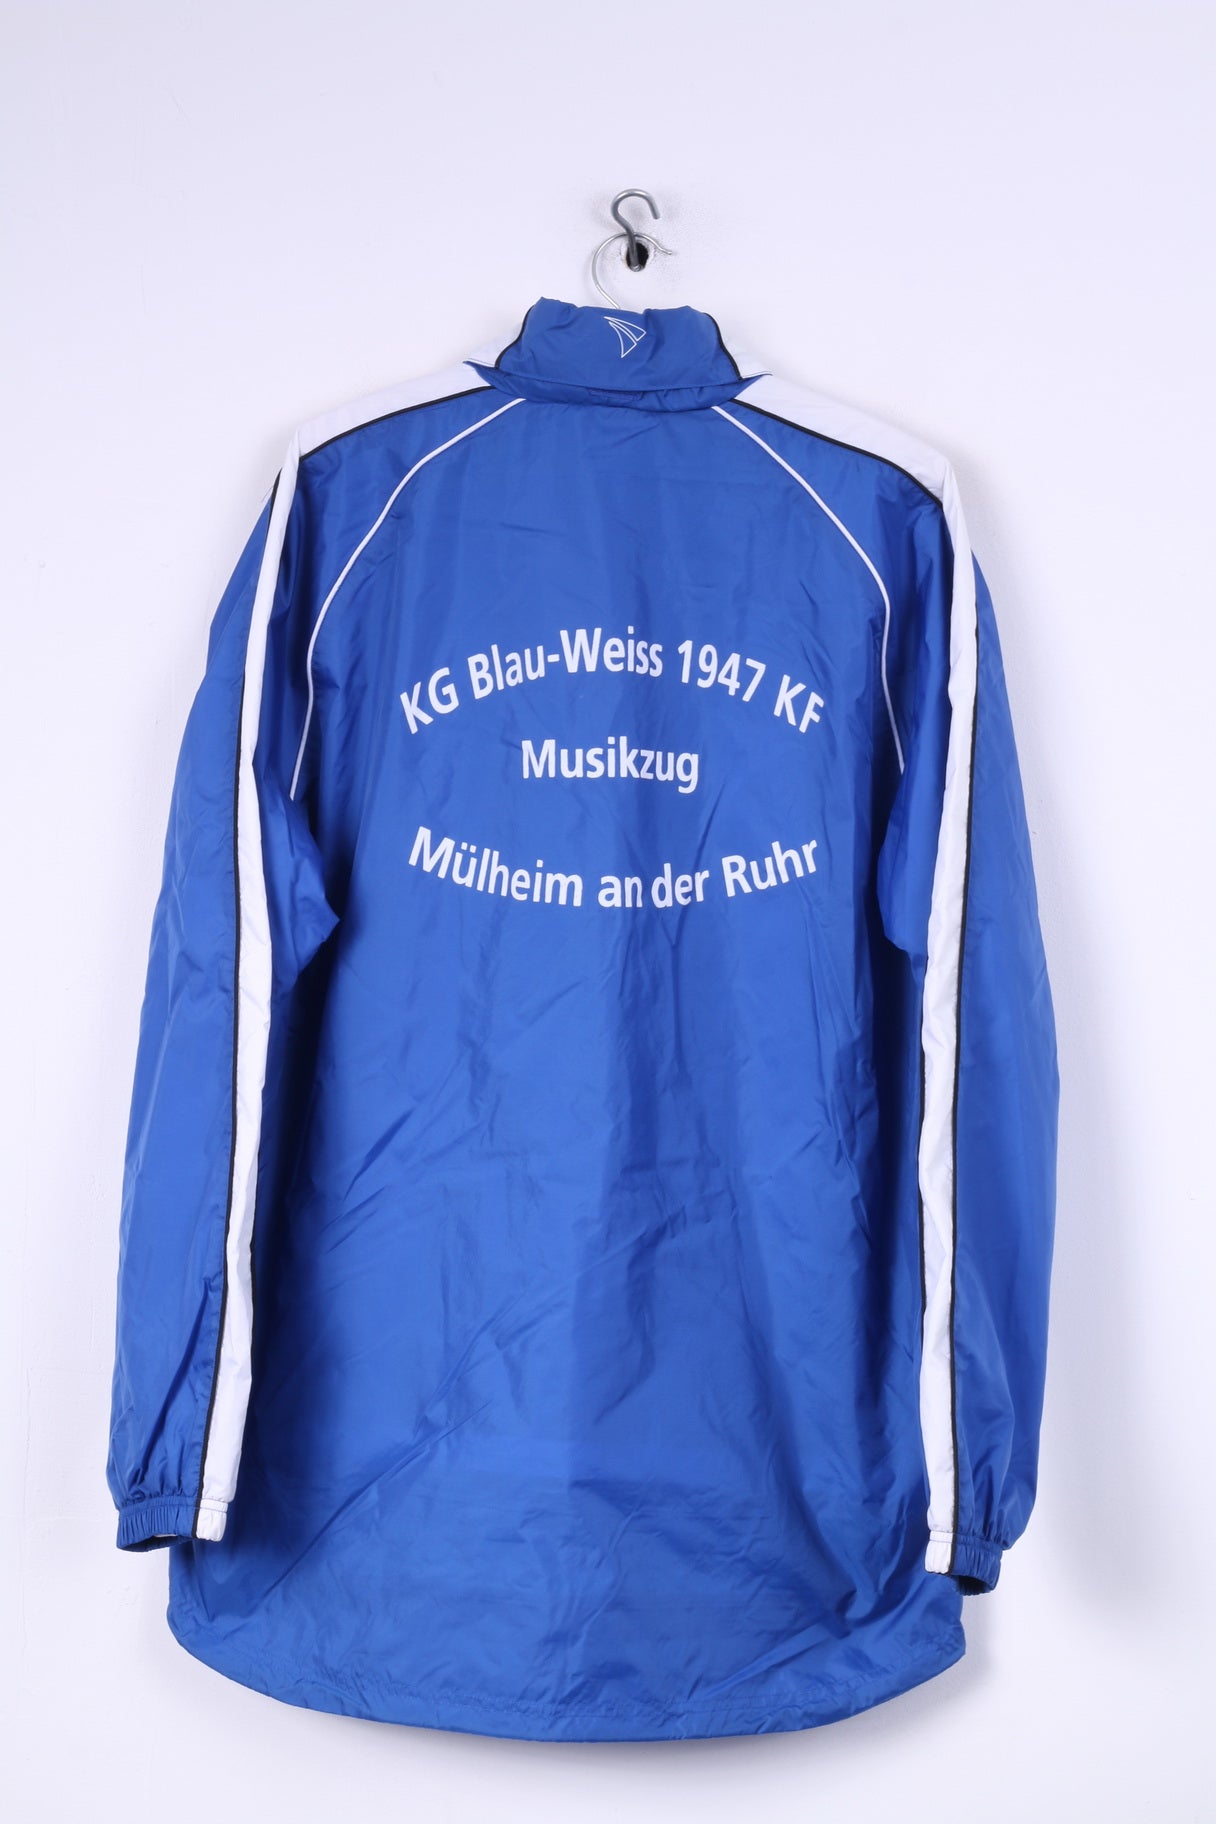 Jako Mens XL Lightweight Jacket Blue Hidden Hood Sportswear Top Nylon Waterproof KG Blau-Weiss 1947 KF